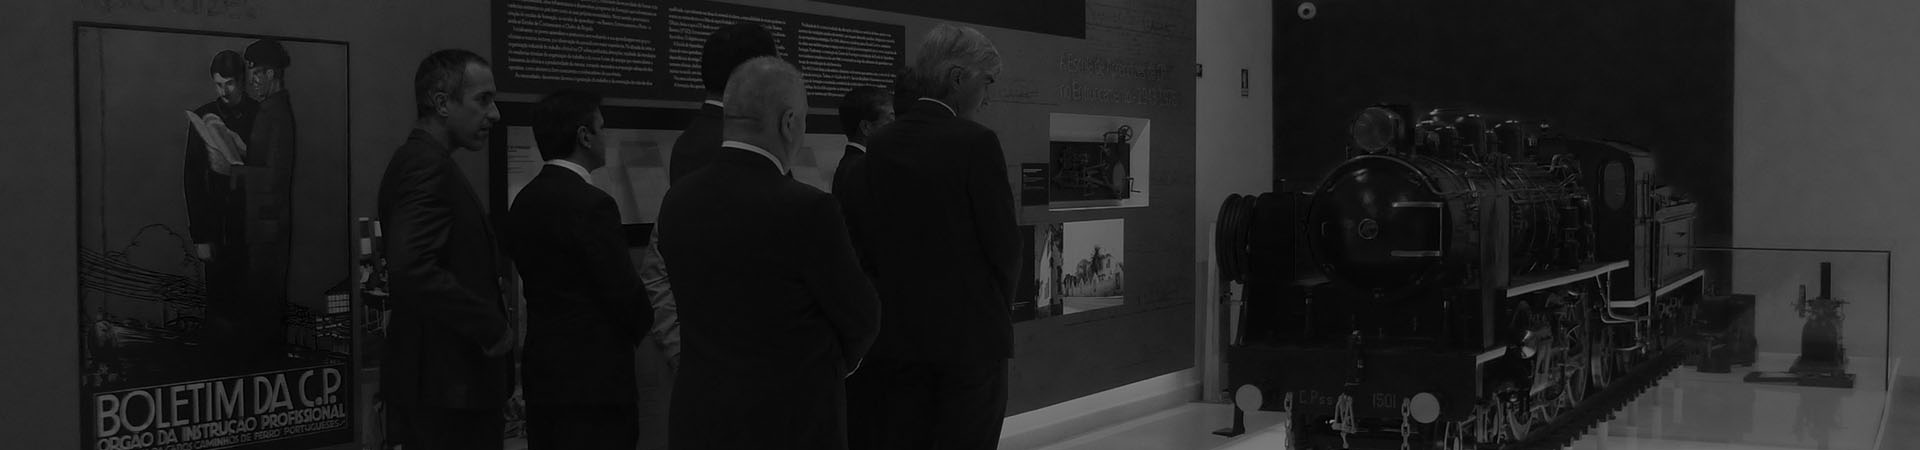 Photographie d'un groupe d'entreprises visitant le musée